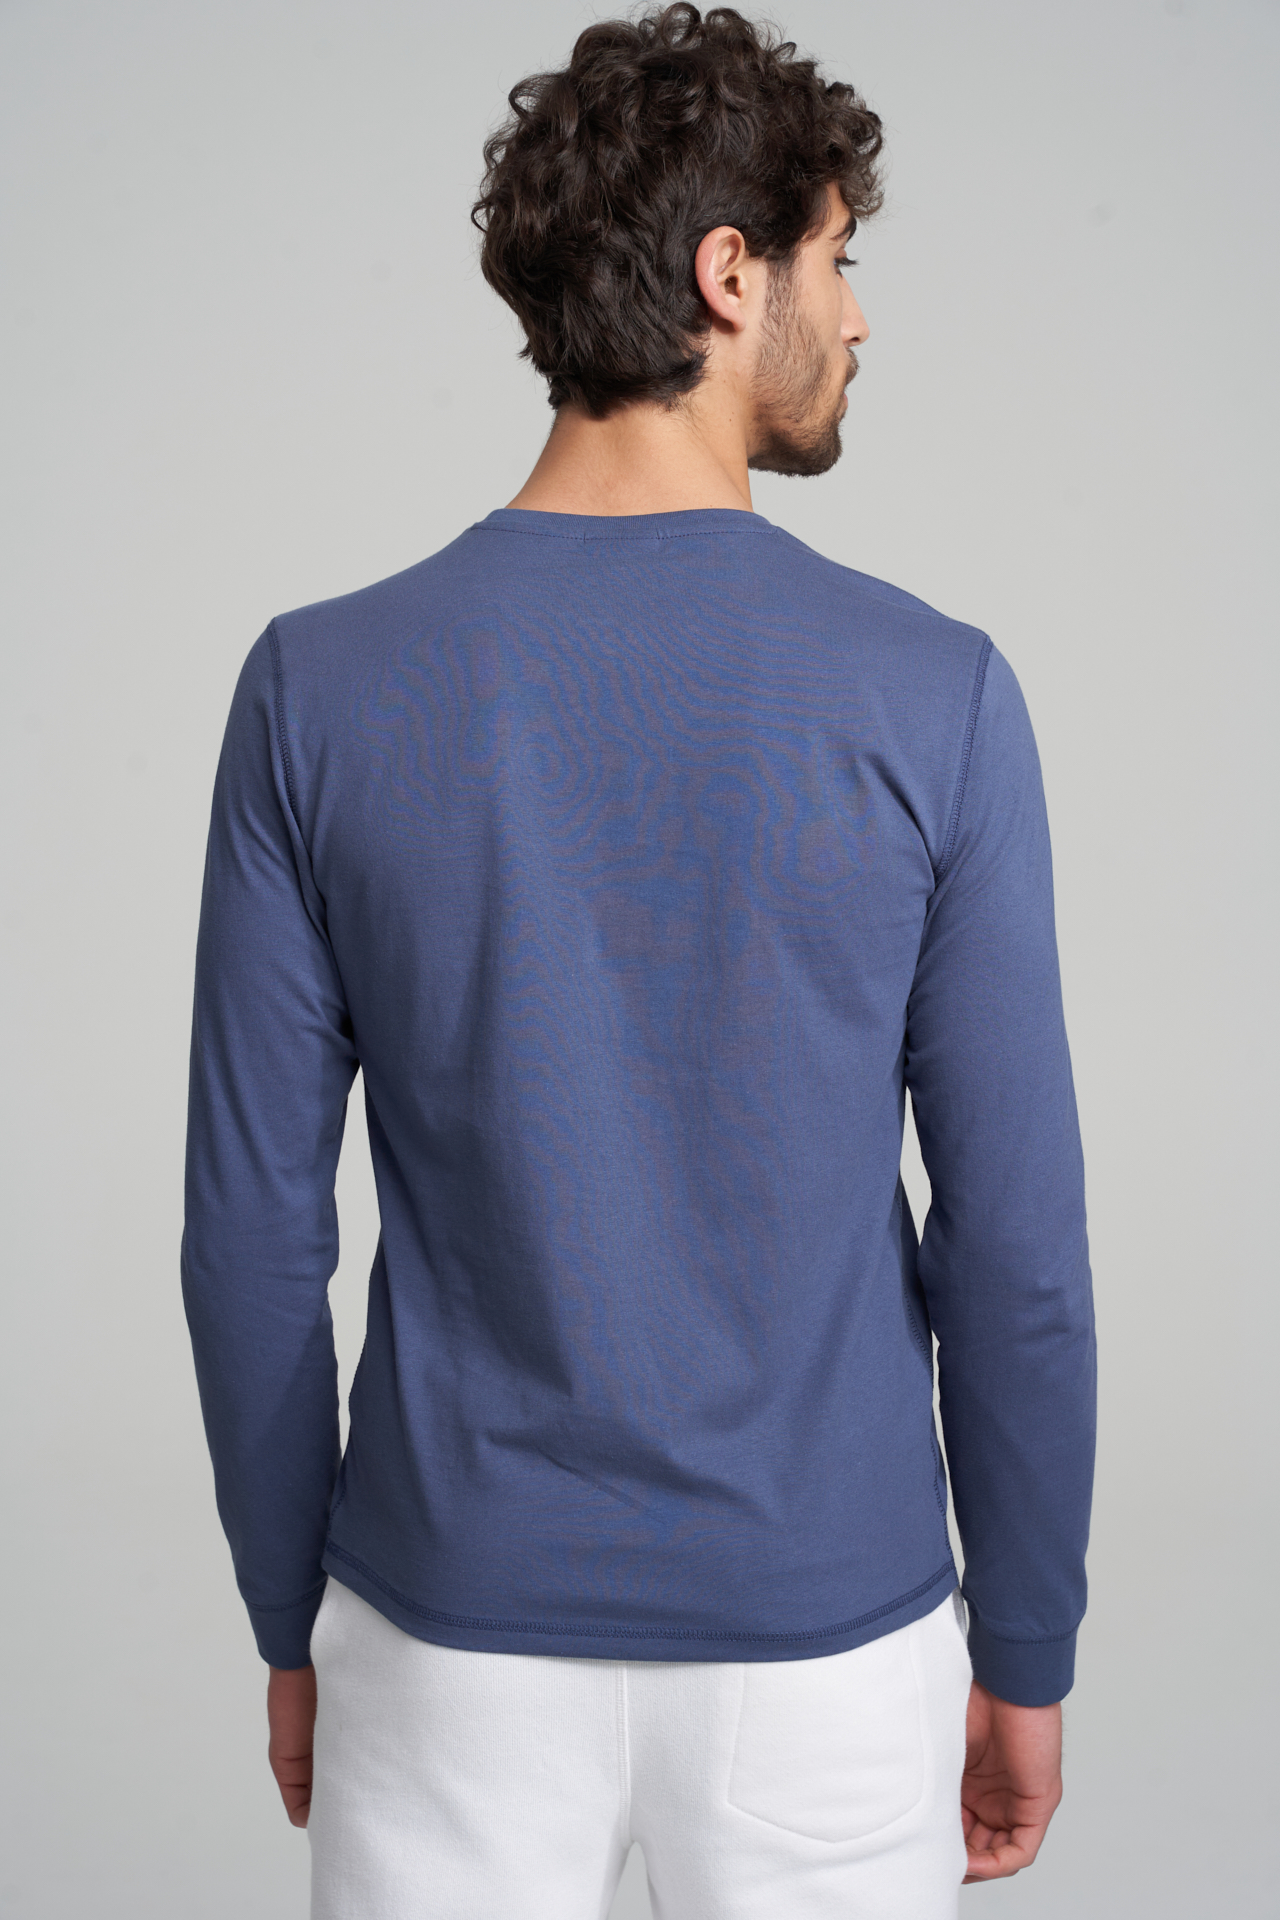 T-Shirt Azul Médio Casual Homem